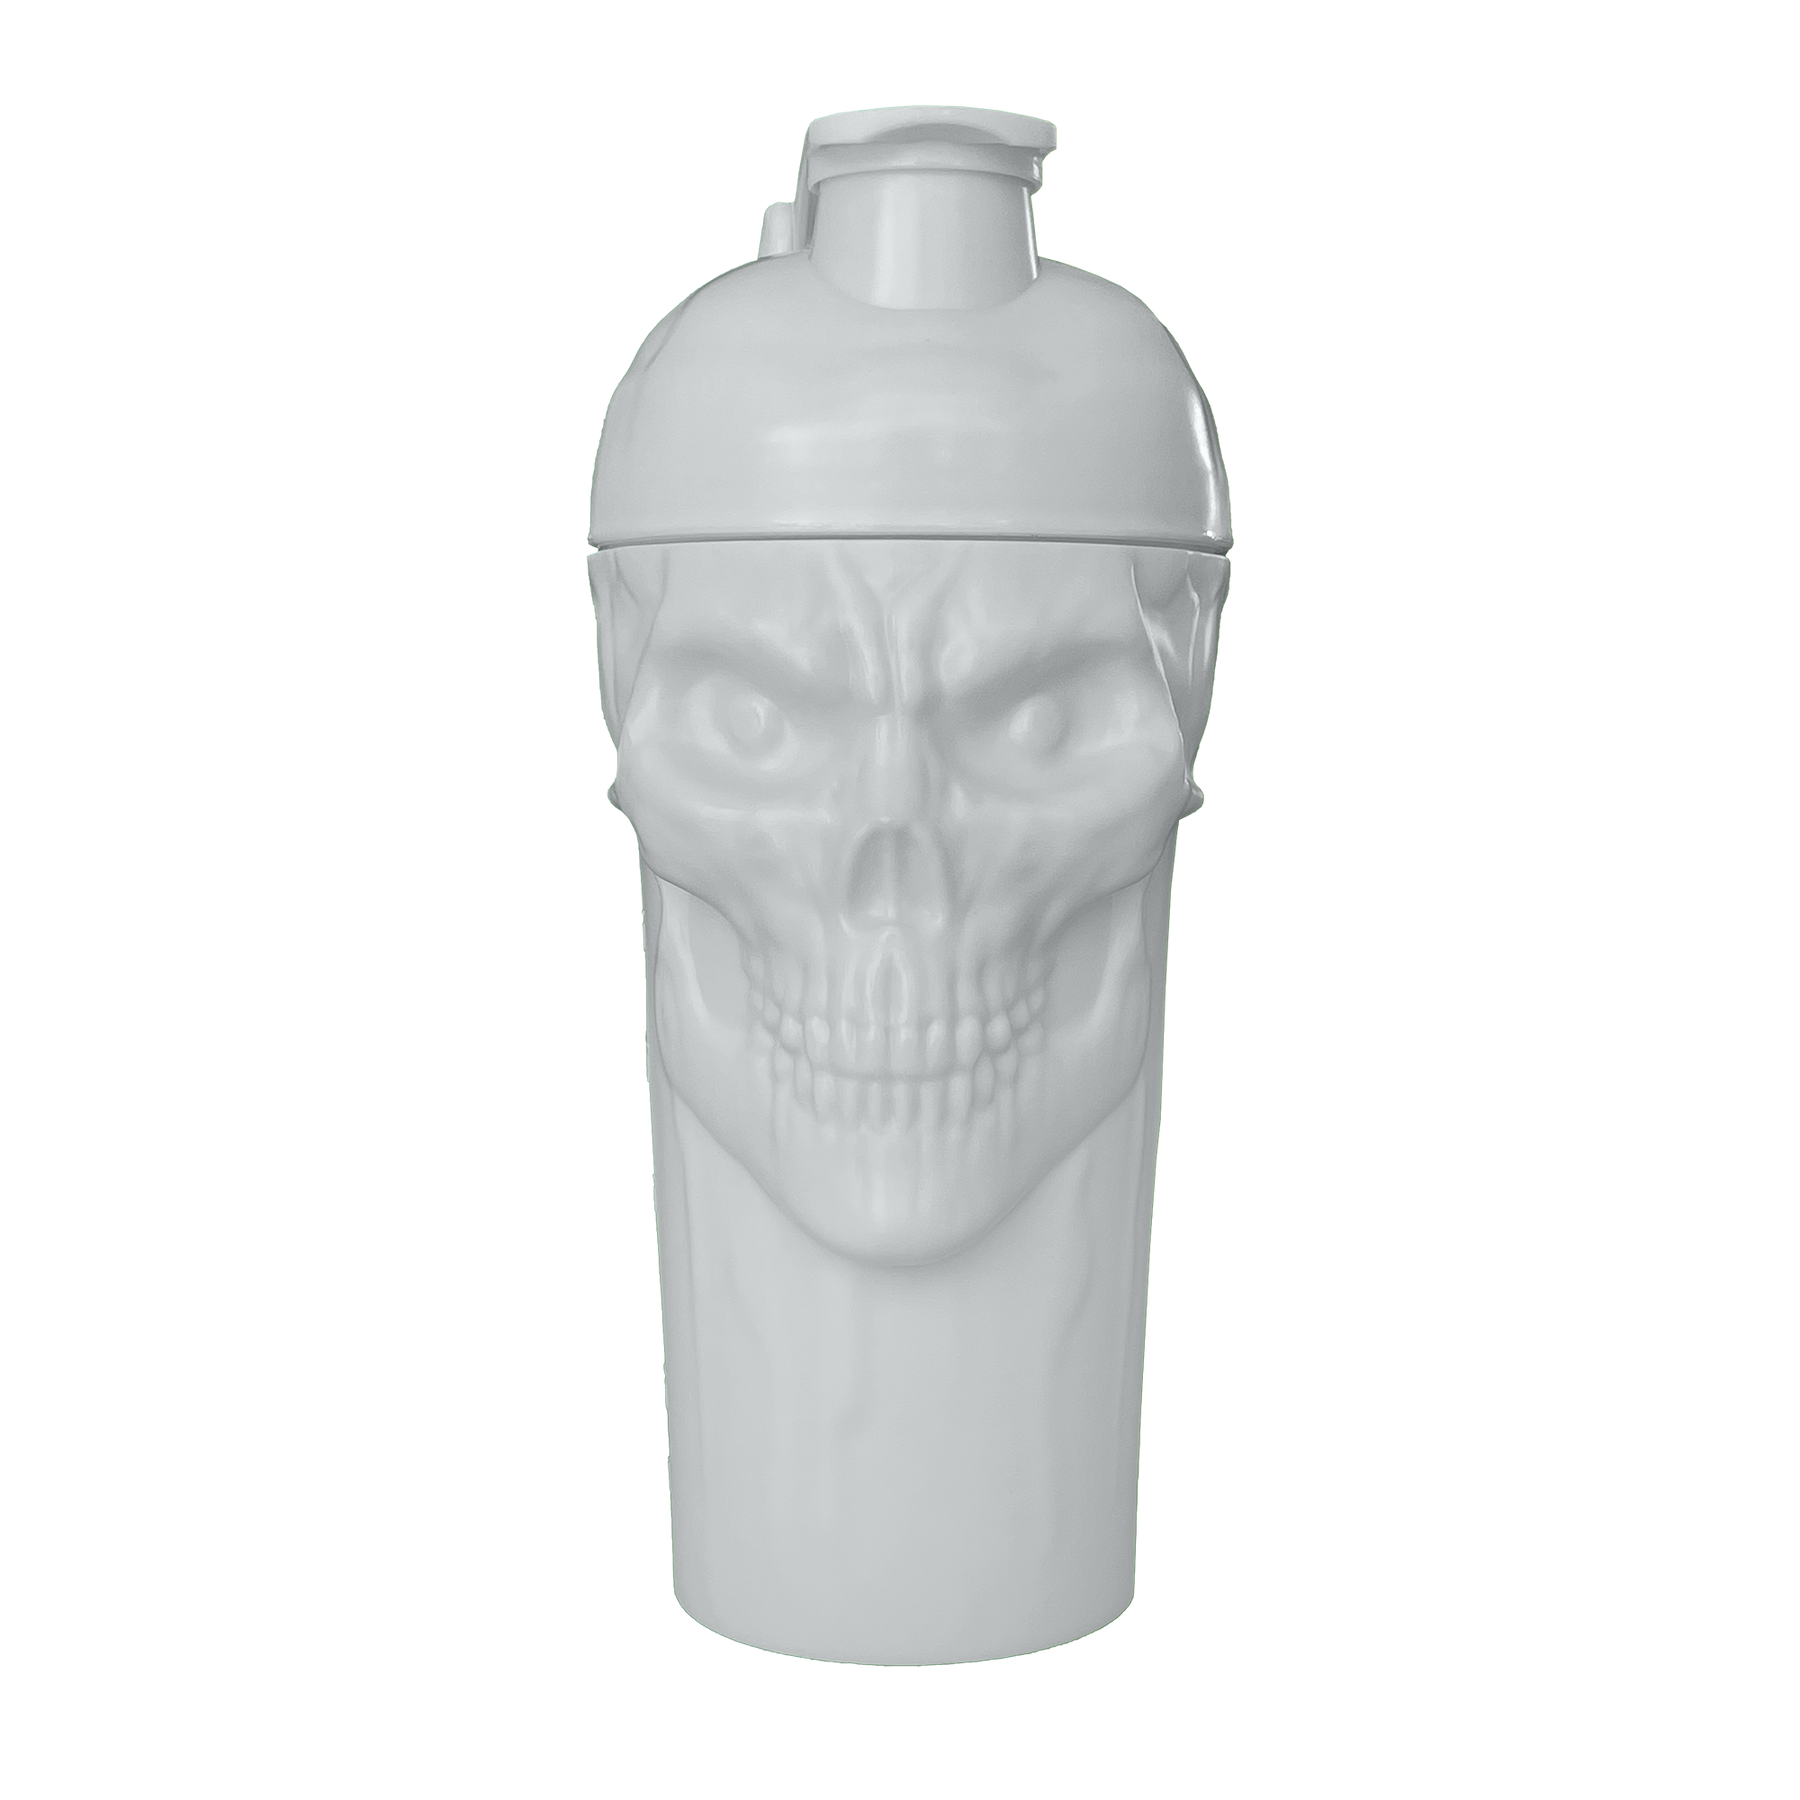 The Curse! Skull Shaker